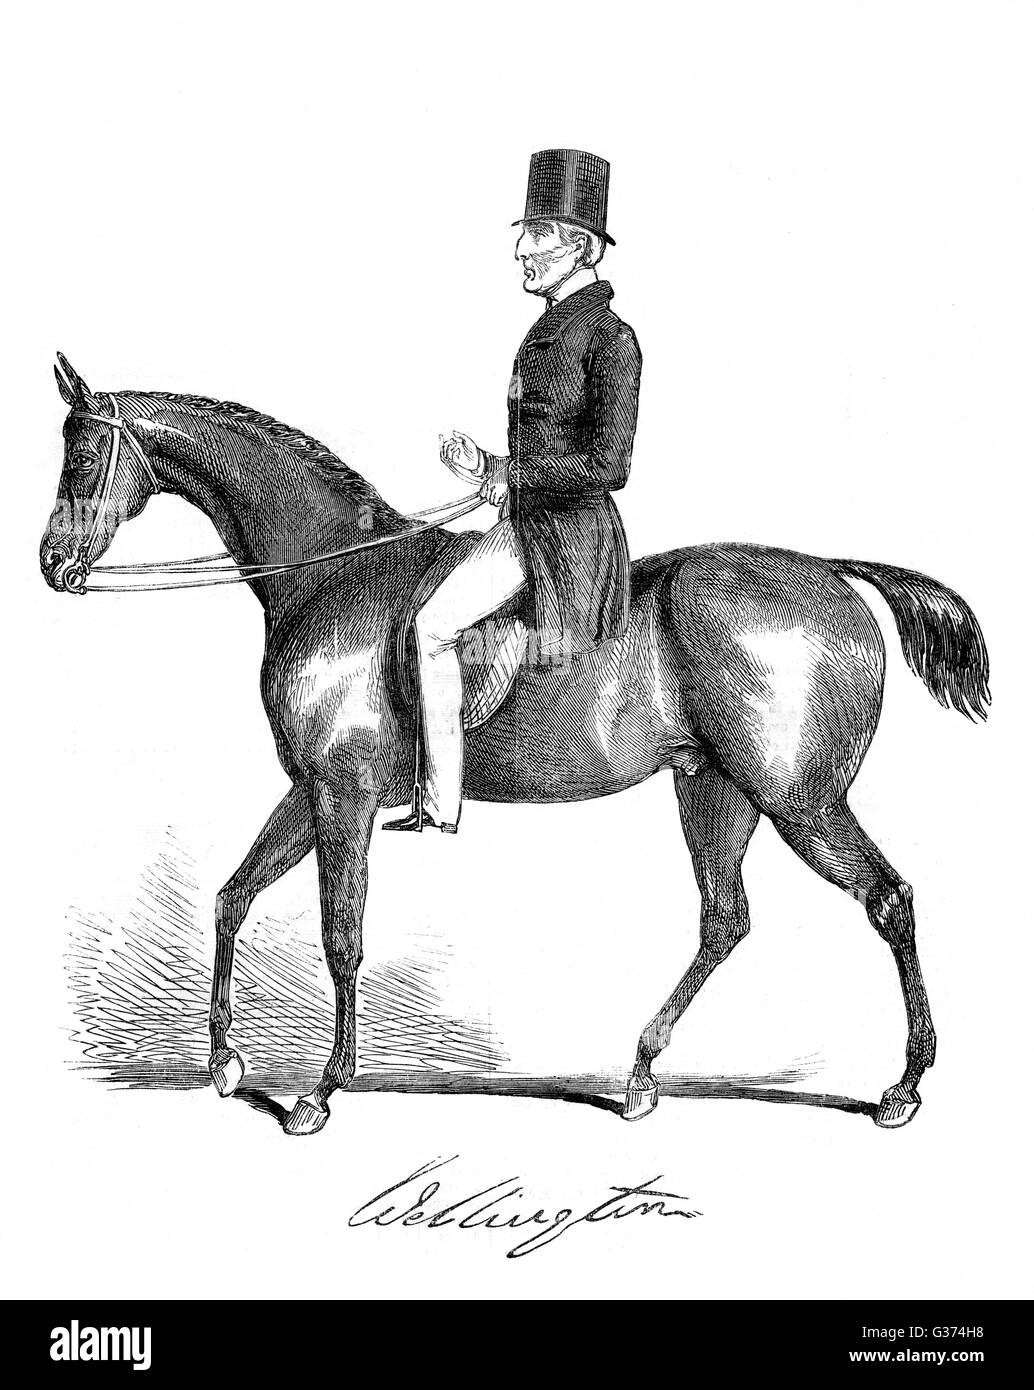 ARTHUR WELLESLEY, duque de Wellington, soldado y estadista, cabalgando dos años antes de su muerte Fecha: 1769 - 1852 Foto de stock